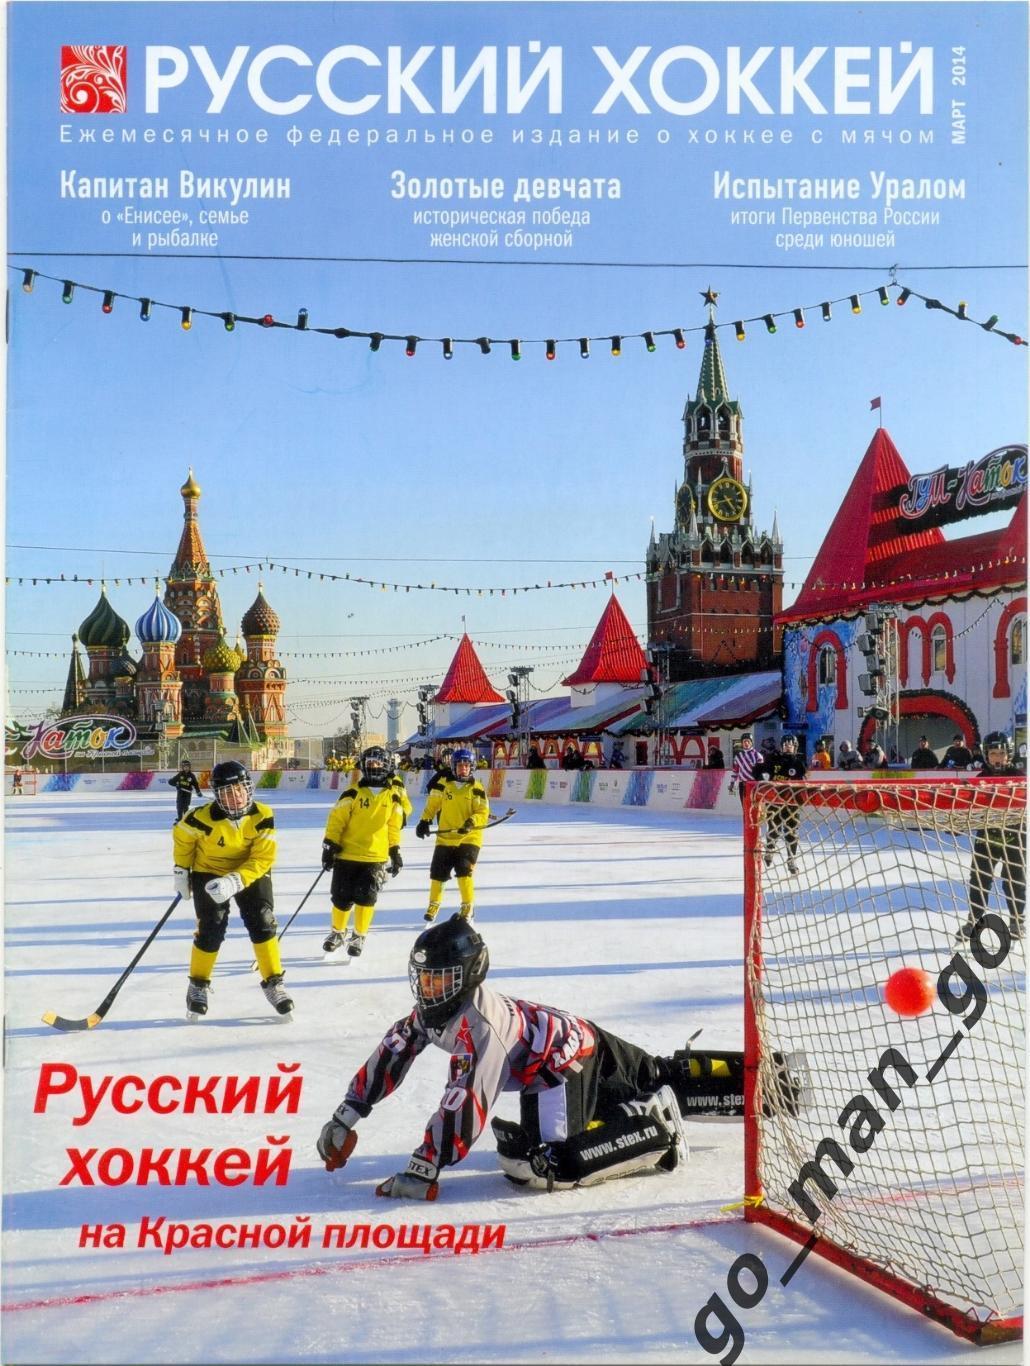 Журнал РУССКИЙ ХОККЕЙ, март 2014.